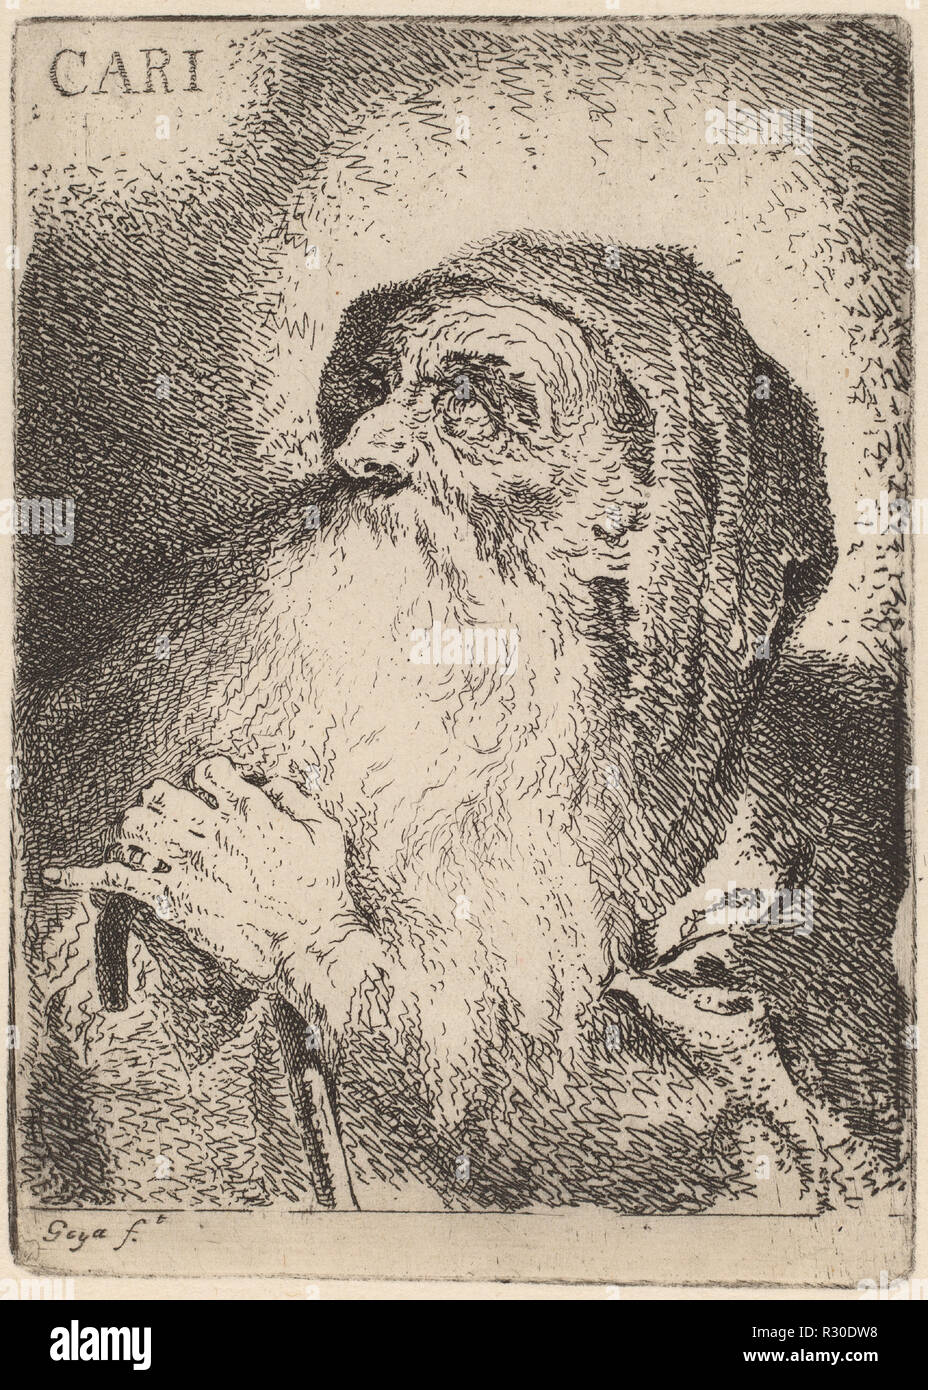 Der Caritas. Abmessungen: Platte: 13,1 x 9,5 cm (5 3/16 x 3 3/4 in.) Blatt: 27 x 19,2 cm (10 5/8 x 7 9/16 in.). Medium: Radierung und Kaltnadelradierung auf dünnem Papier [zweite Ausgabe Eindruck vermutlich gedruckt ca. 1920-1930]. Museum: Nationalgalerie, Washington DC. Autor: Francisco de Goya. Stockfoto